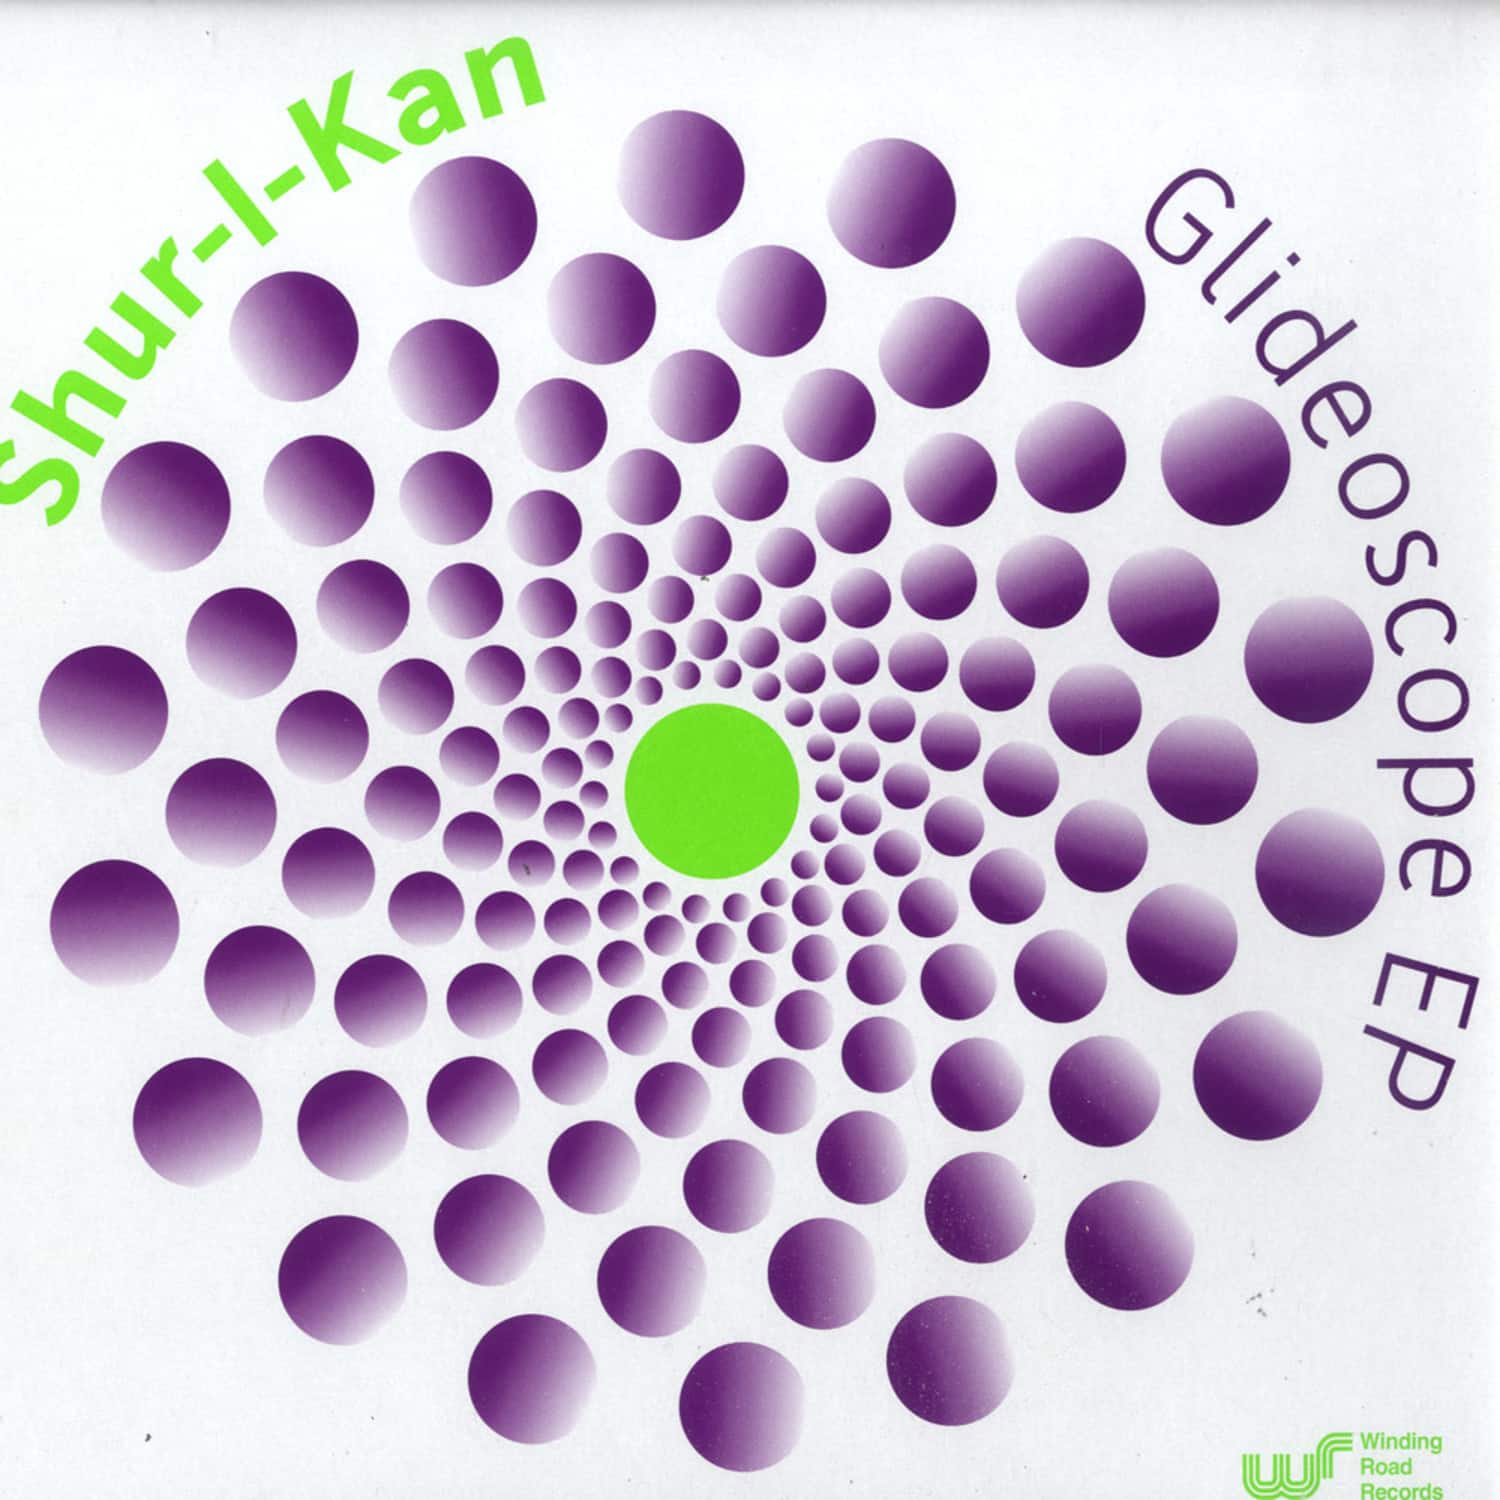 Shur-i-kan - GLIDEOSCOPE EP